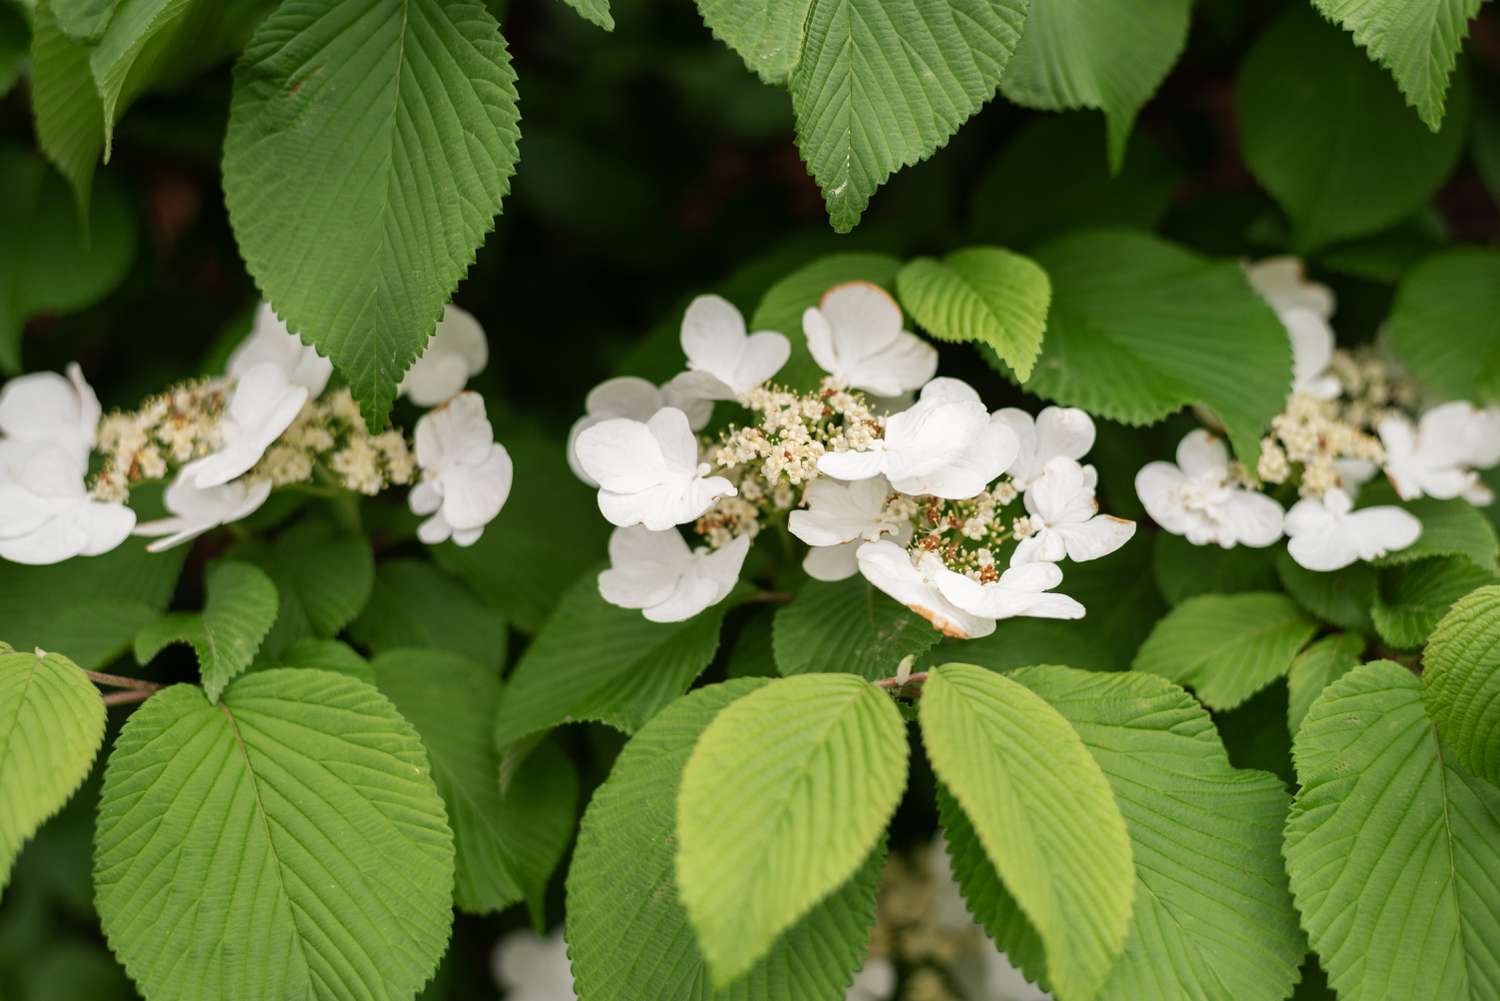 Hortênsia trepadeira com pequenos cachos de flores brancas entre trepadeiras com nervuras